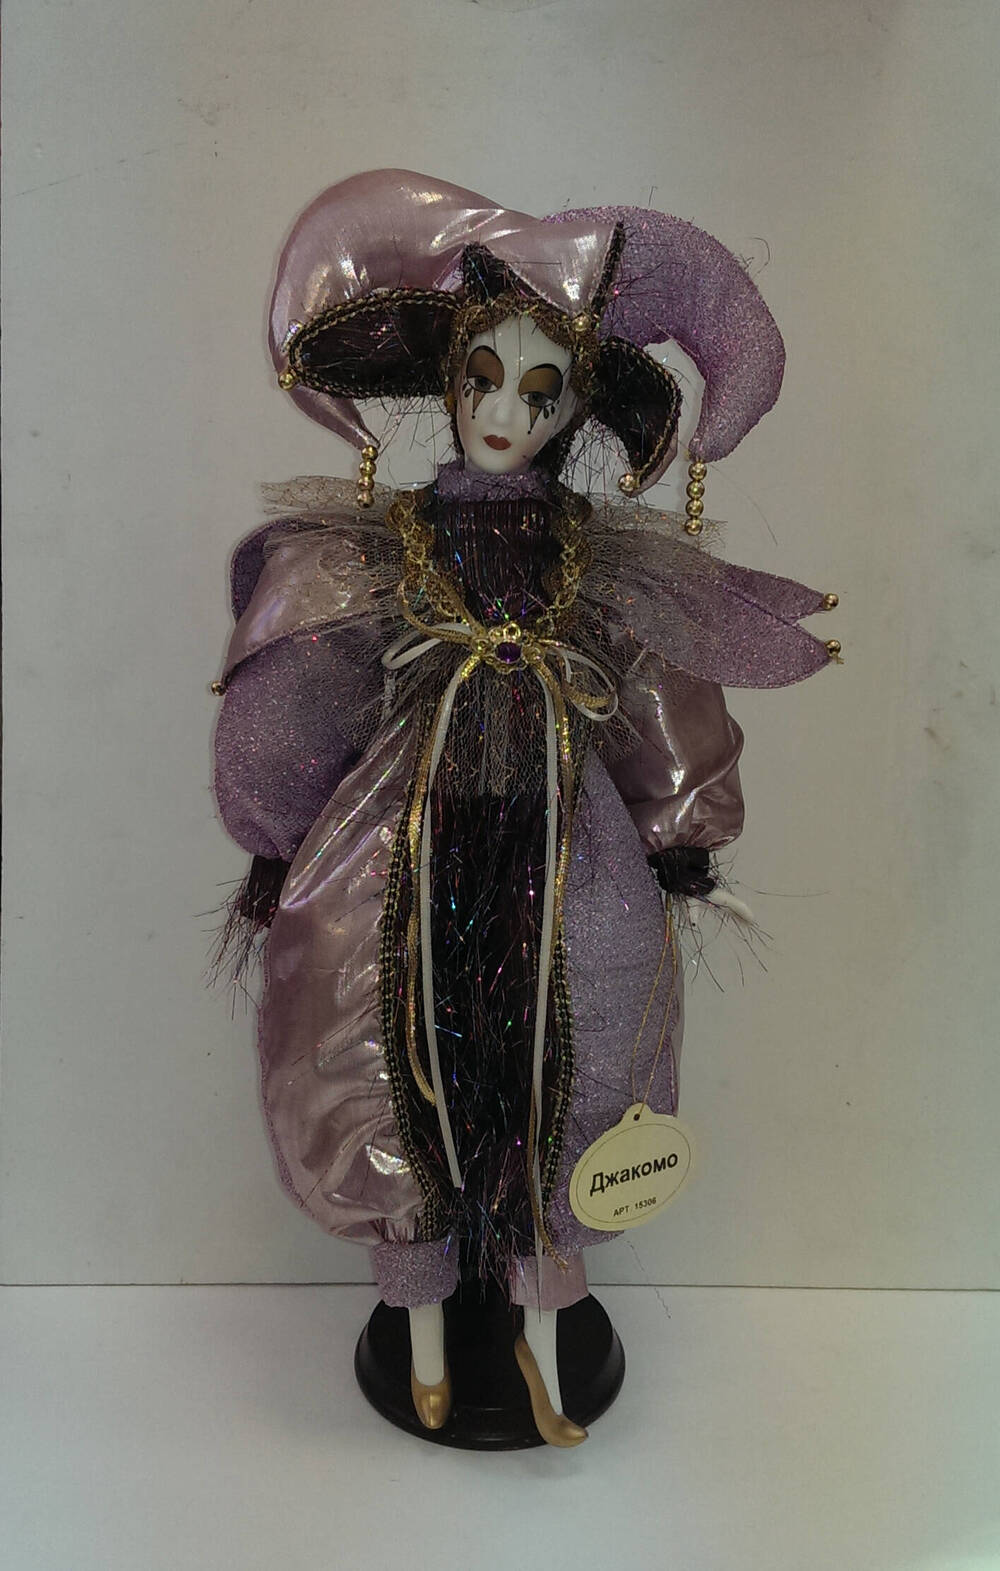 Джакомо. Кукла из Коллекции кукол ручной работы с фарфоровыми элементами «Арлекин» компании «Ремеко», Великобритания (Remeco HARLEQUIN Collection).